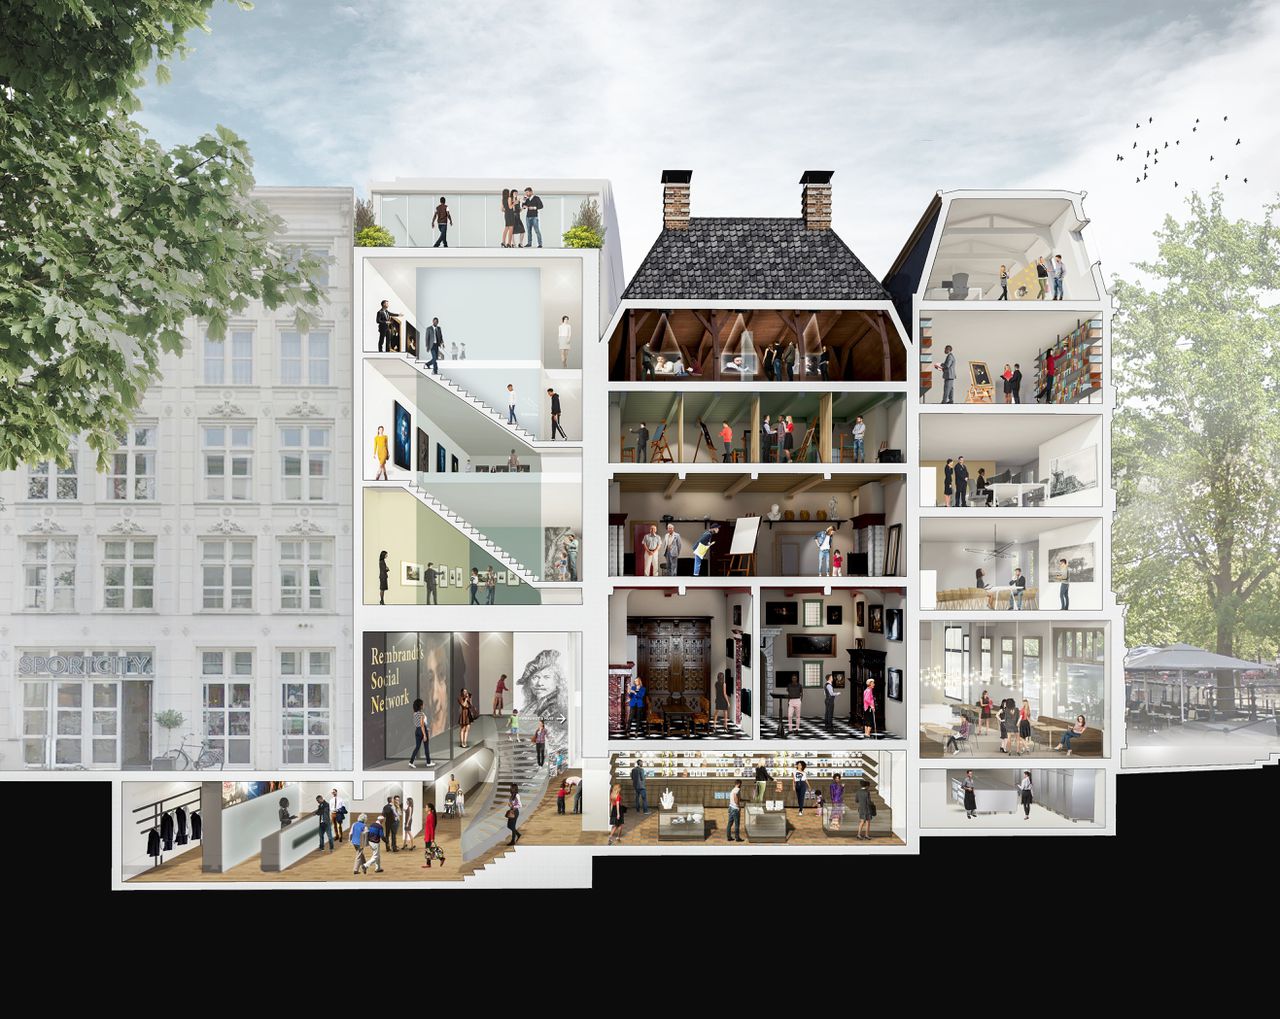 Groter en toegankelijker: opengewerkt plan voor de verbouwing Rembrandthuis aan de Jodenbreestraat in Amsterdam, naar ontwerp architect Janneke Bierman.